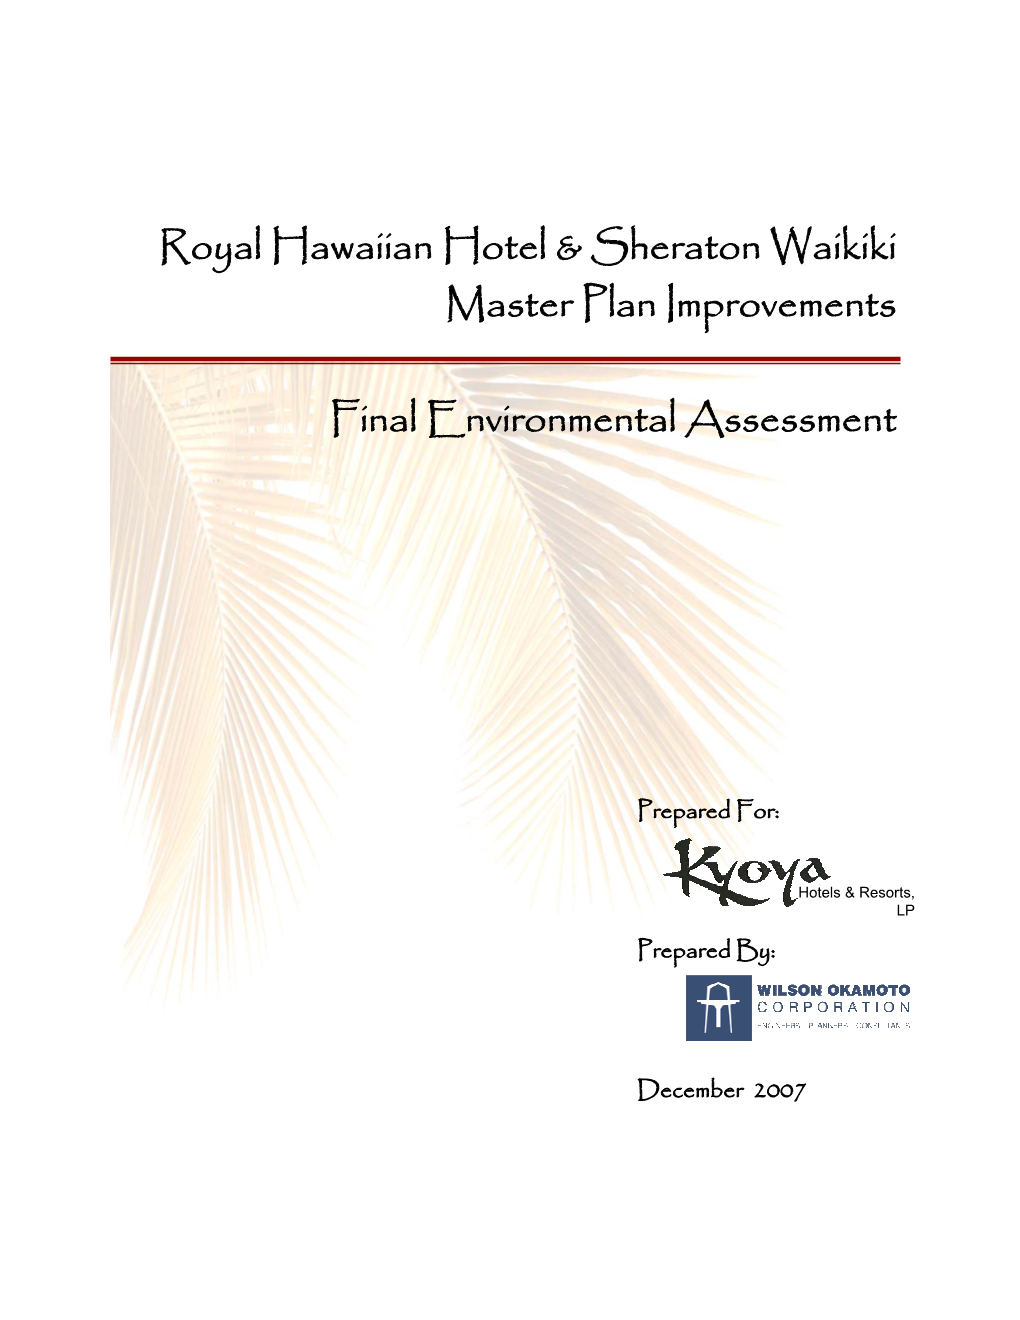 Royal Hawaiian Hotel & Sheraton Waikiki Master Plan Improvements Final Environmental Assessment